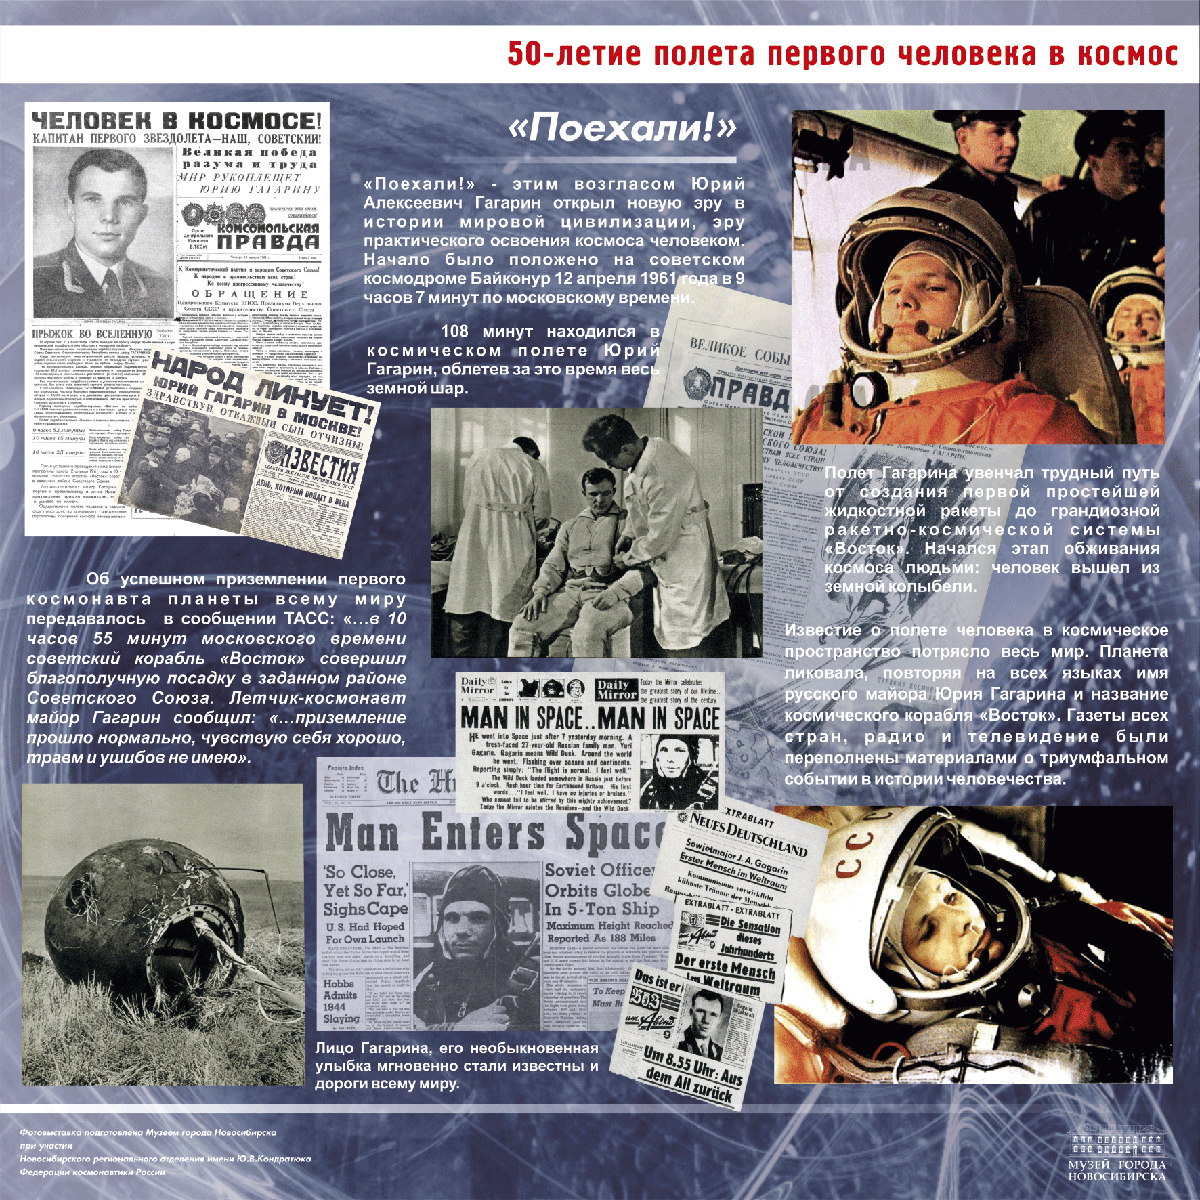 Мероприятия о дне космонавтики. 1961 Первый полет человека в космос. Полет Гагарина в космос 12 апреля 1961. 60 Летие полета Гагарина в космос.